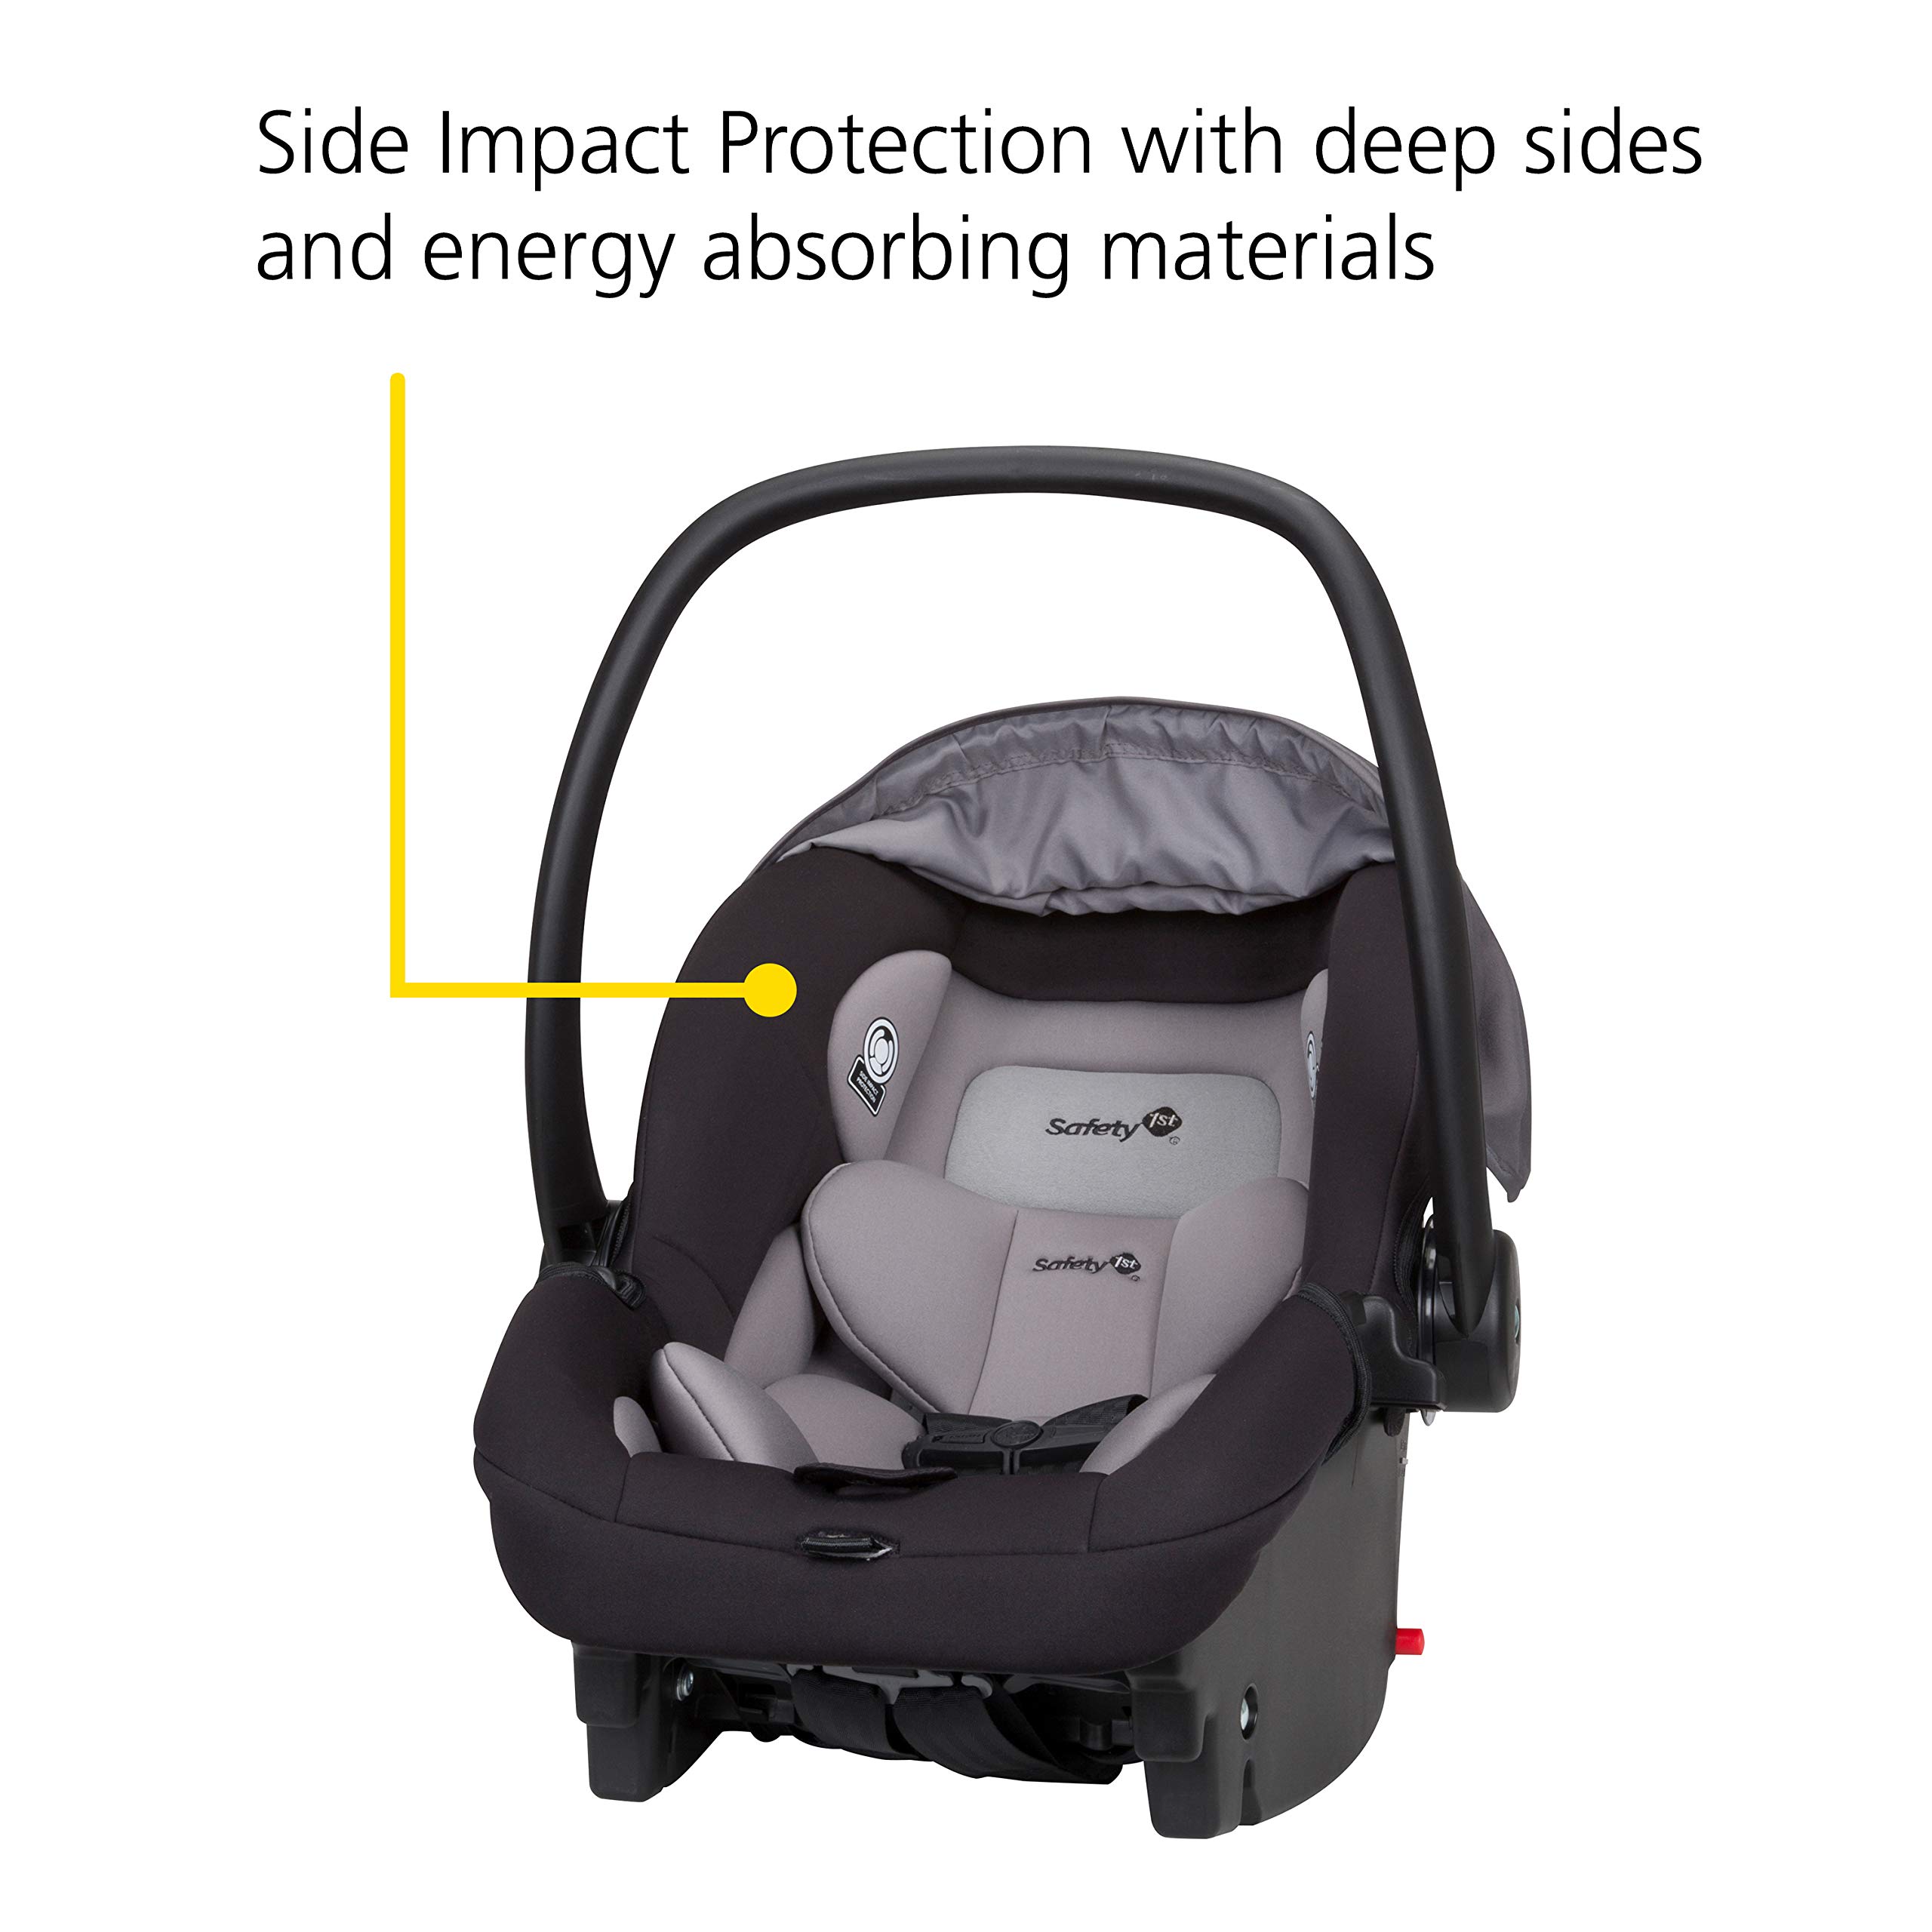 Safety 1st Onboard 35 LT Infant Car Seat, Lake Blue